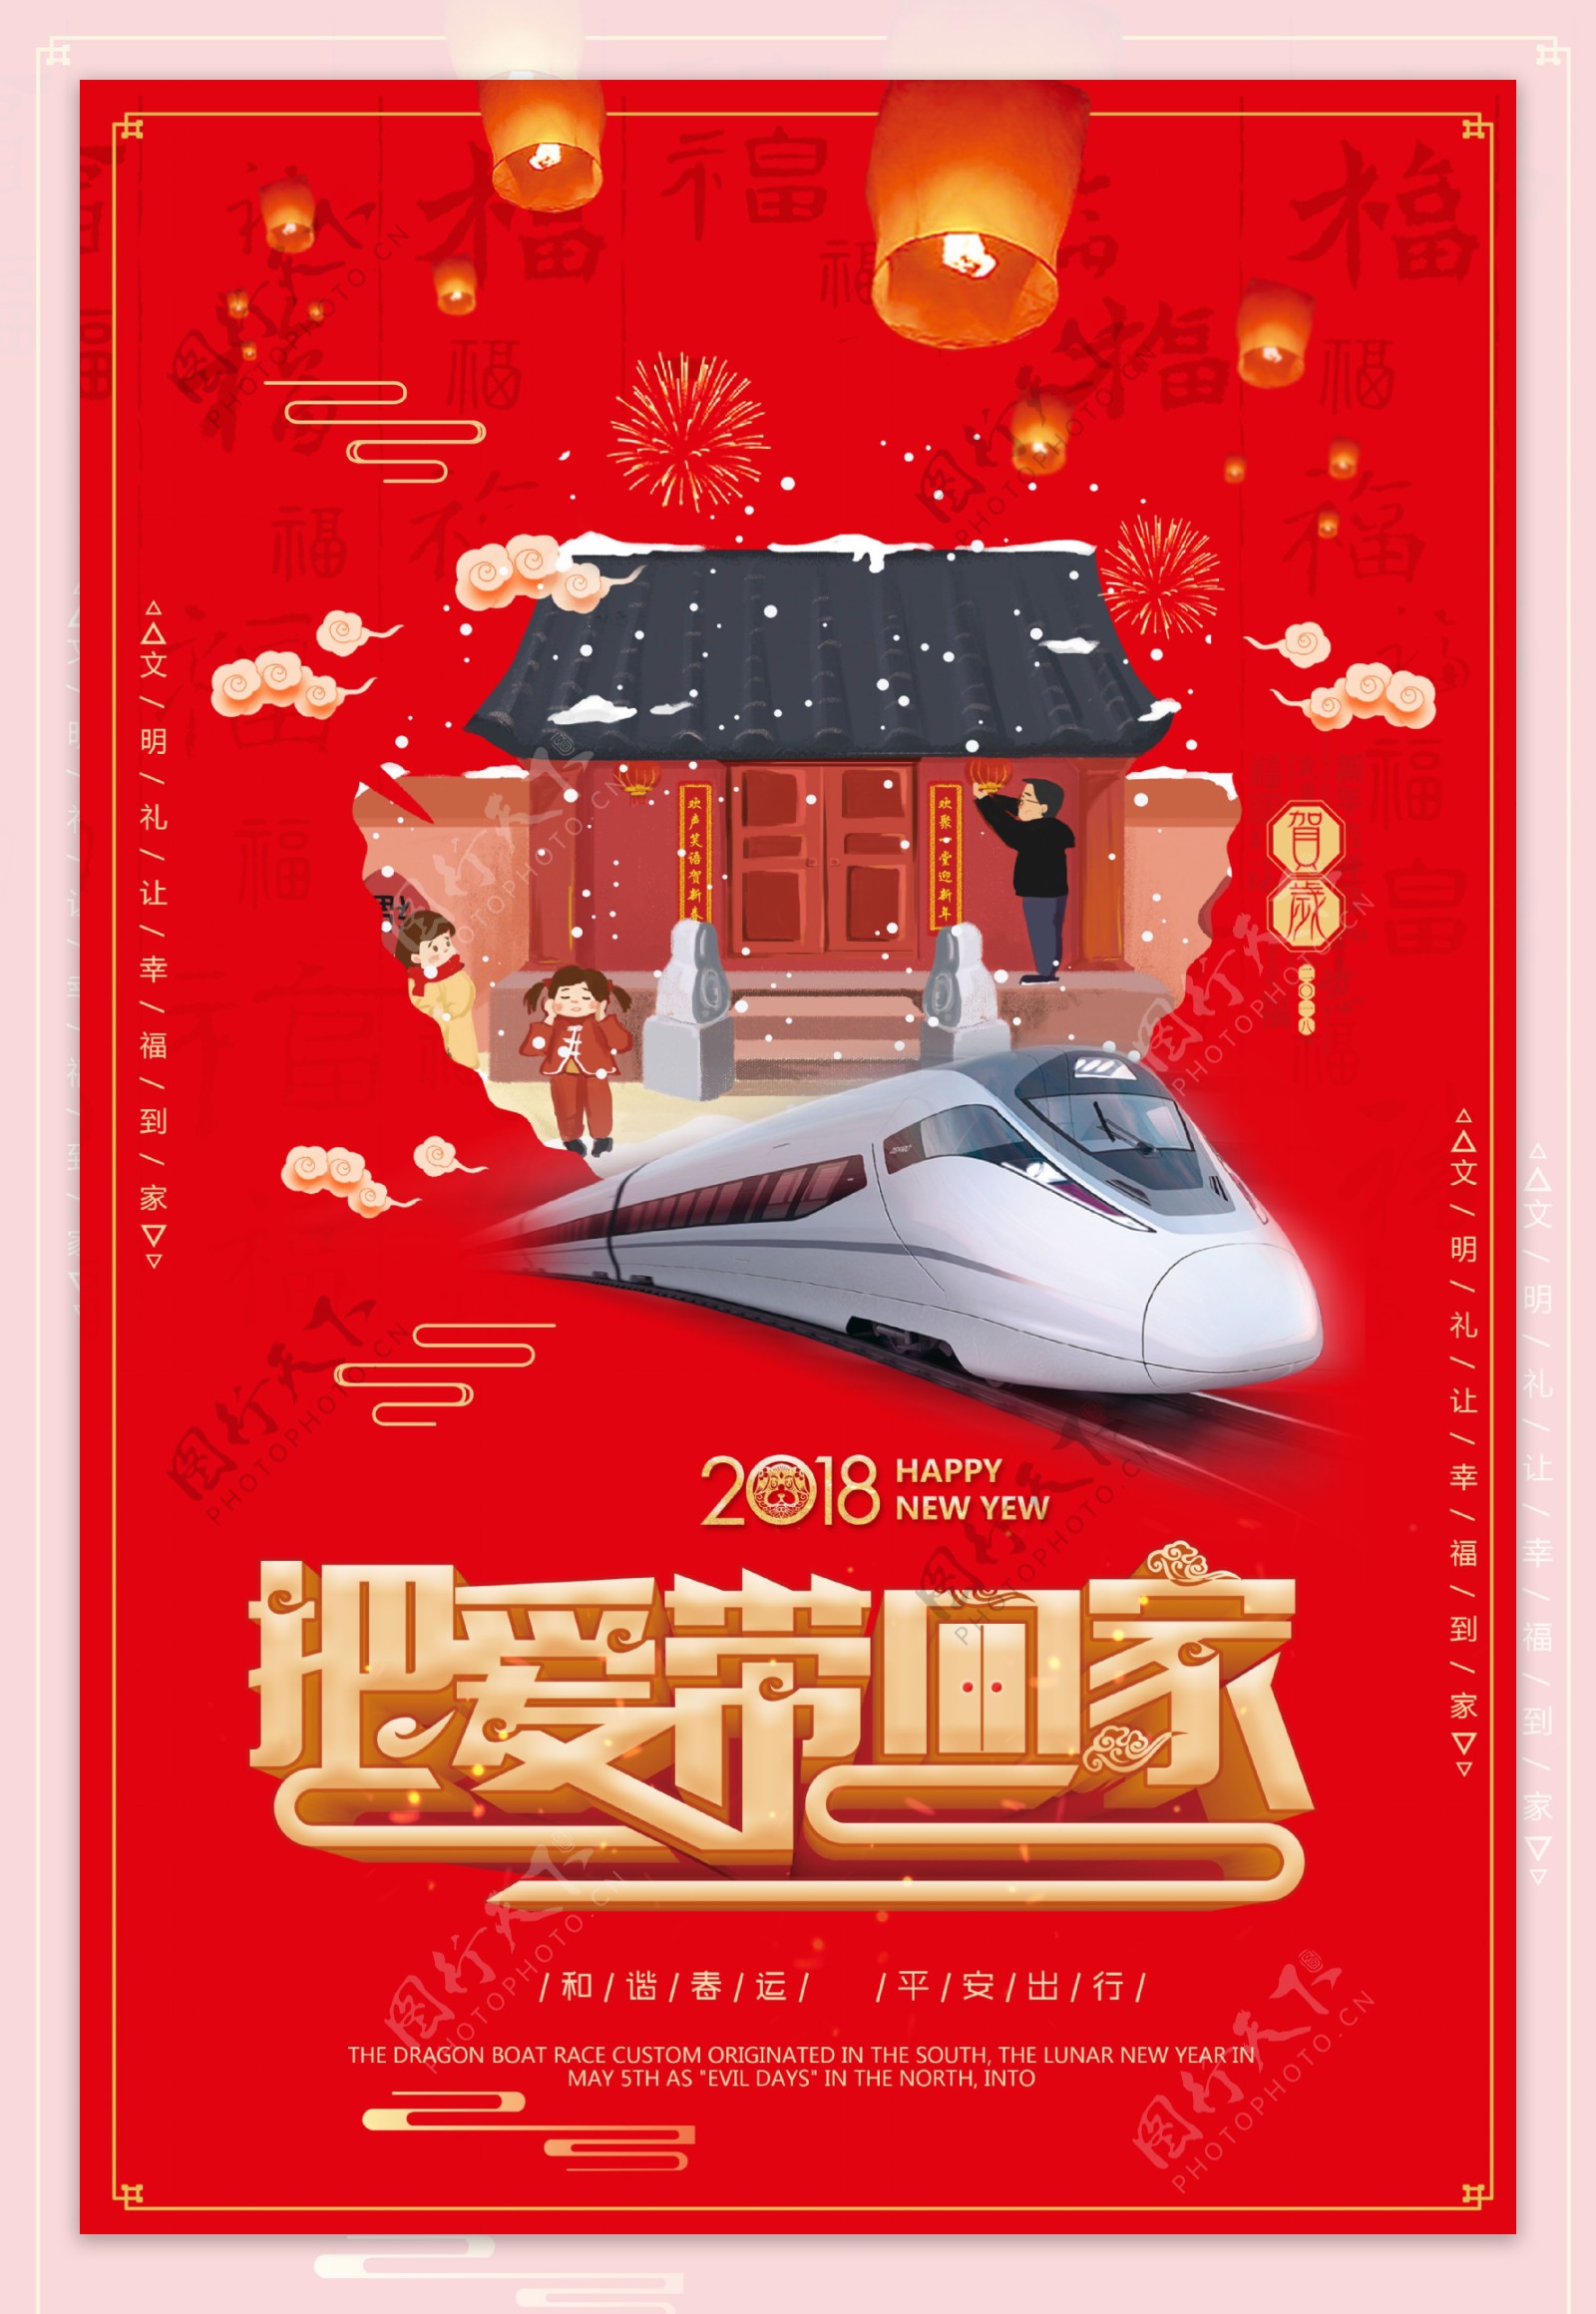 中国风把爱带回家节日海报